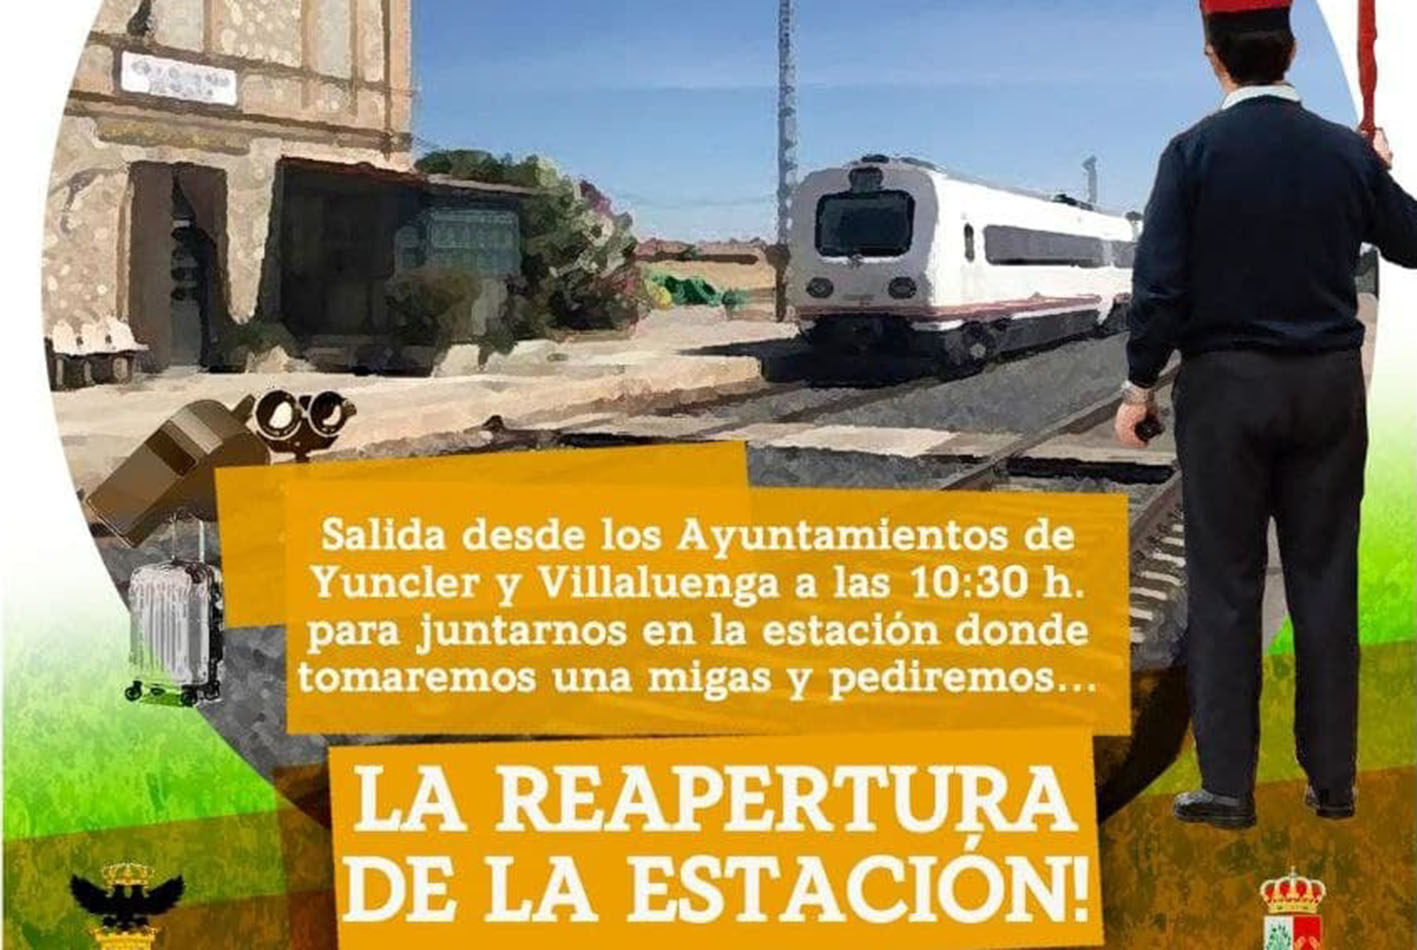 Las manifestaciones para pedir la reapertura de la estación de tren Villaluenga-Yuncler será el domingo a partir de las 10.30 horas.